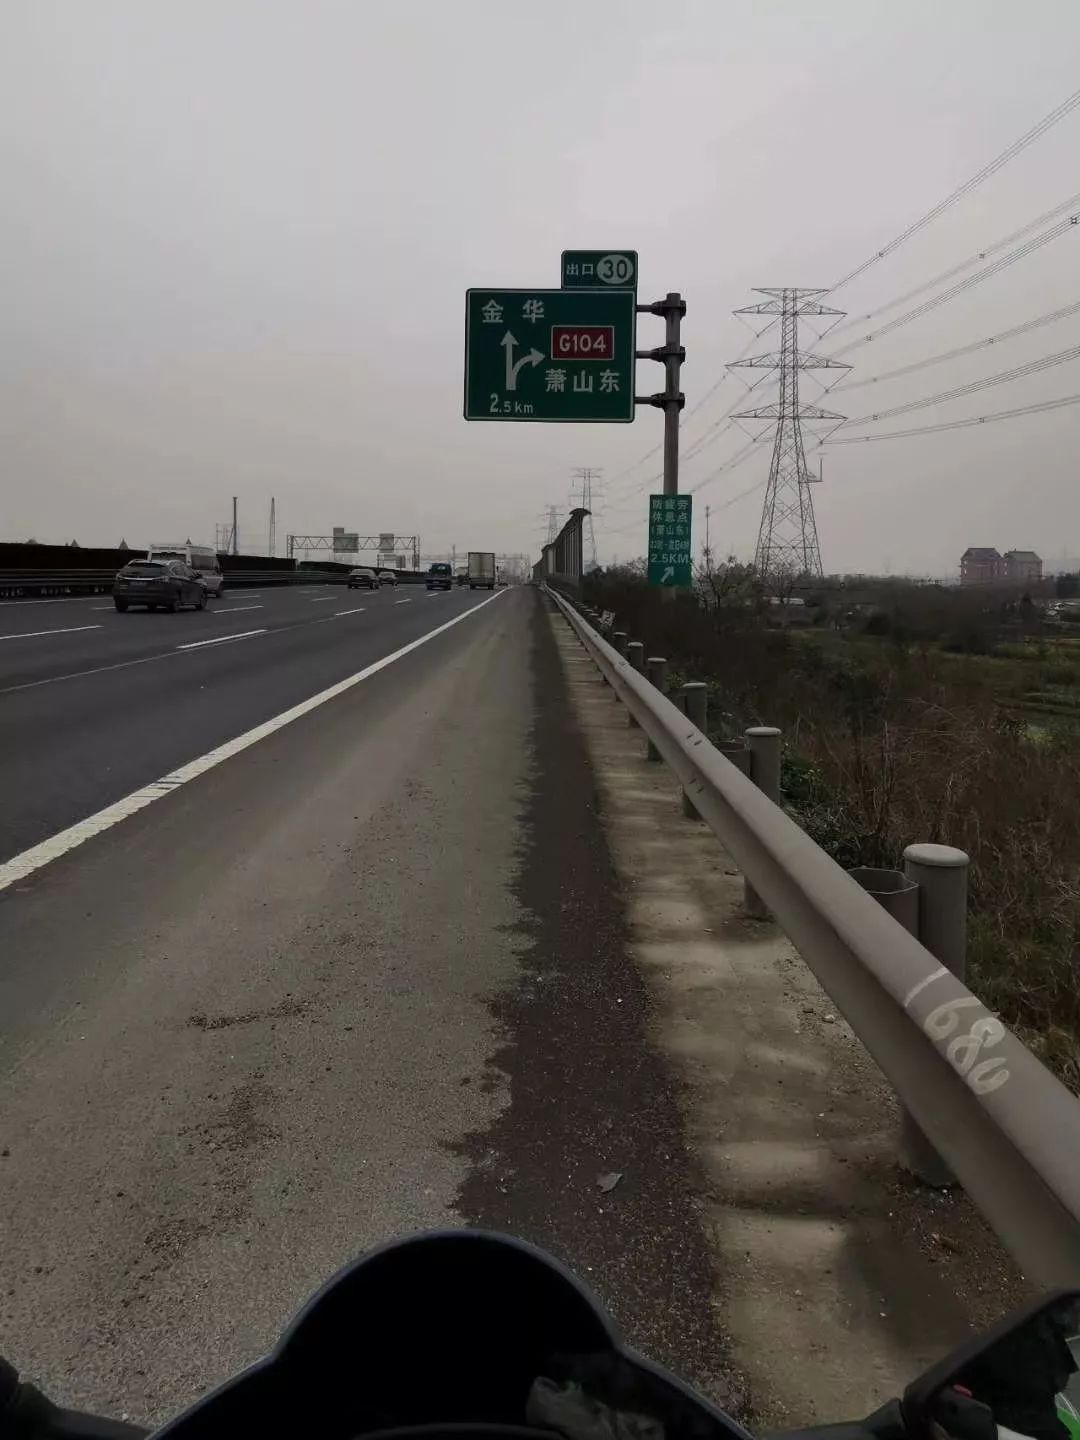 广西,浙江多处高速公路向摩托车开放?摩友正常领卡上高速